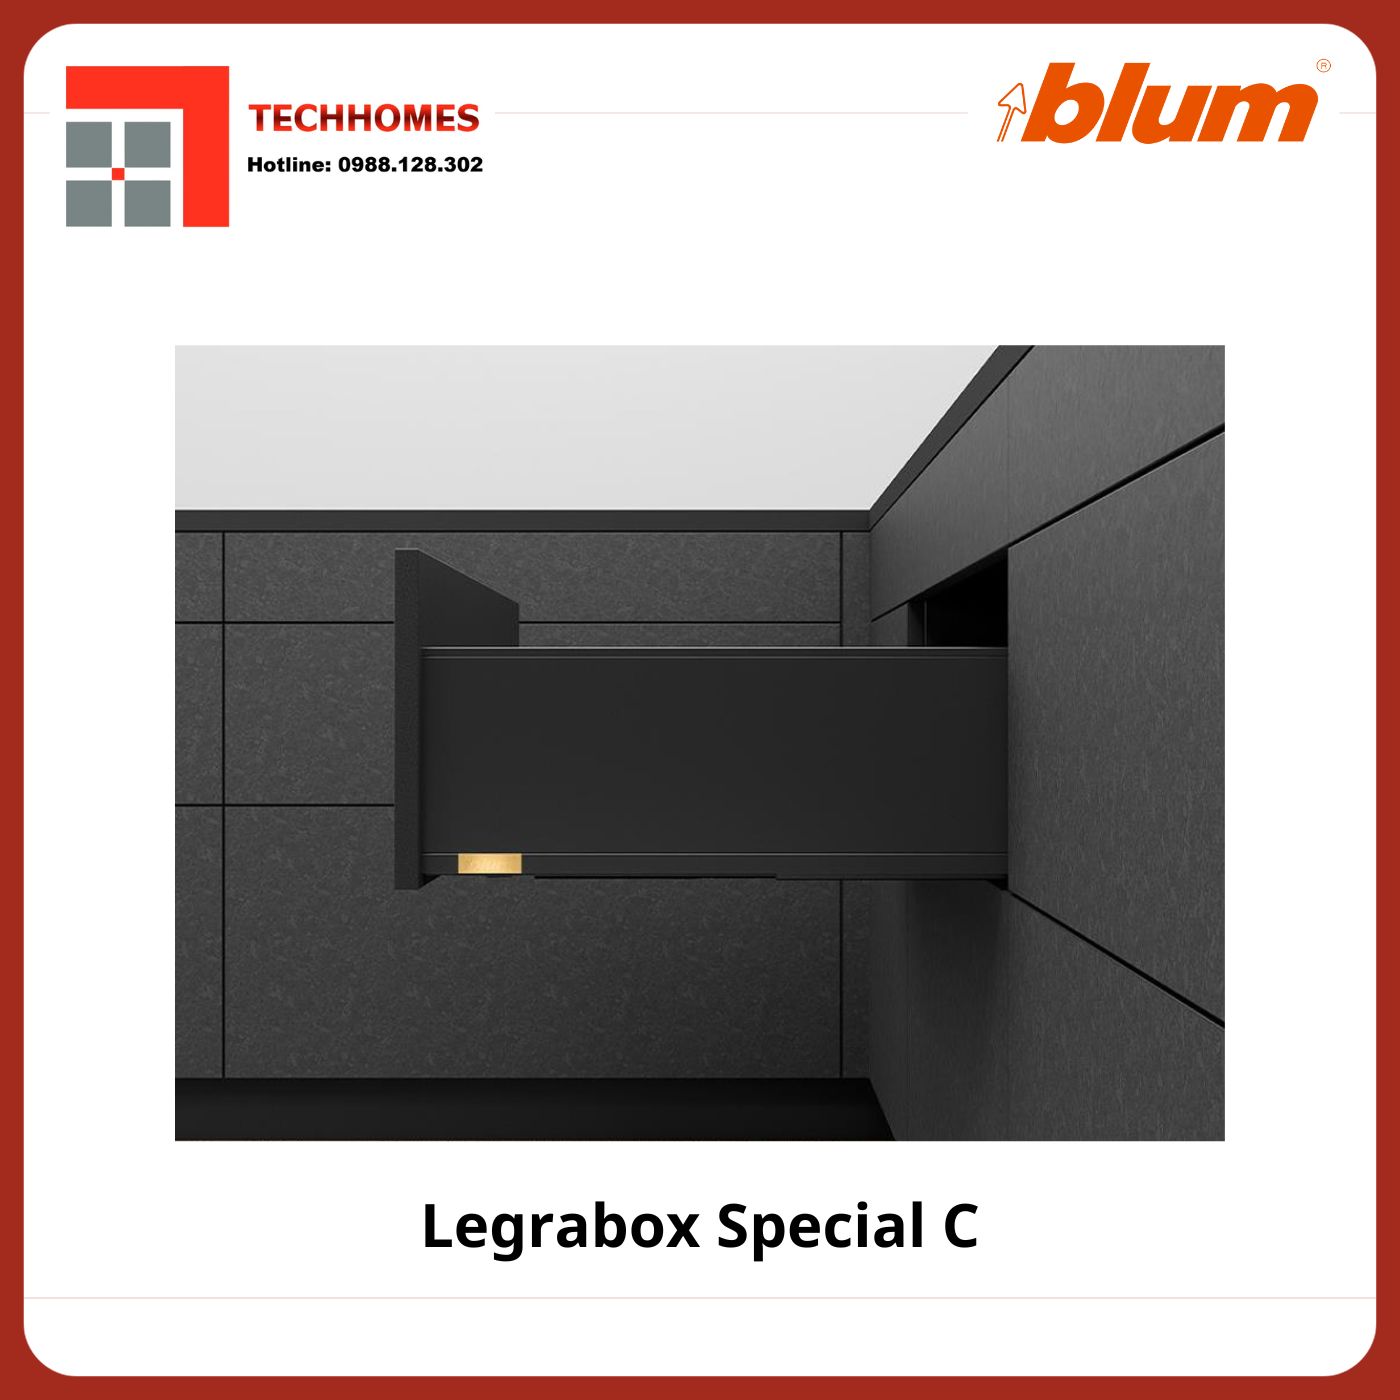 RAY HỘP ĐẶC BIỆT BLUM LEGRABOX SPECIAL C - Legrabox Special C